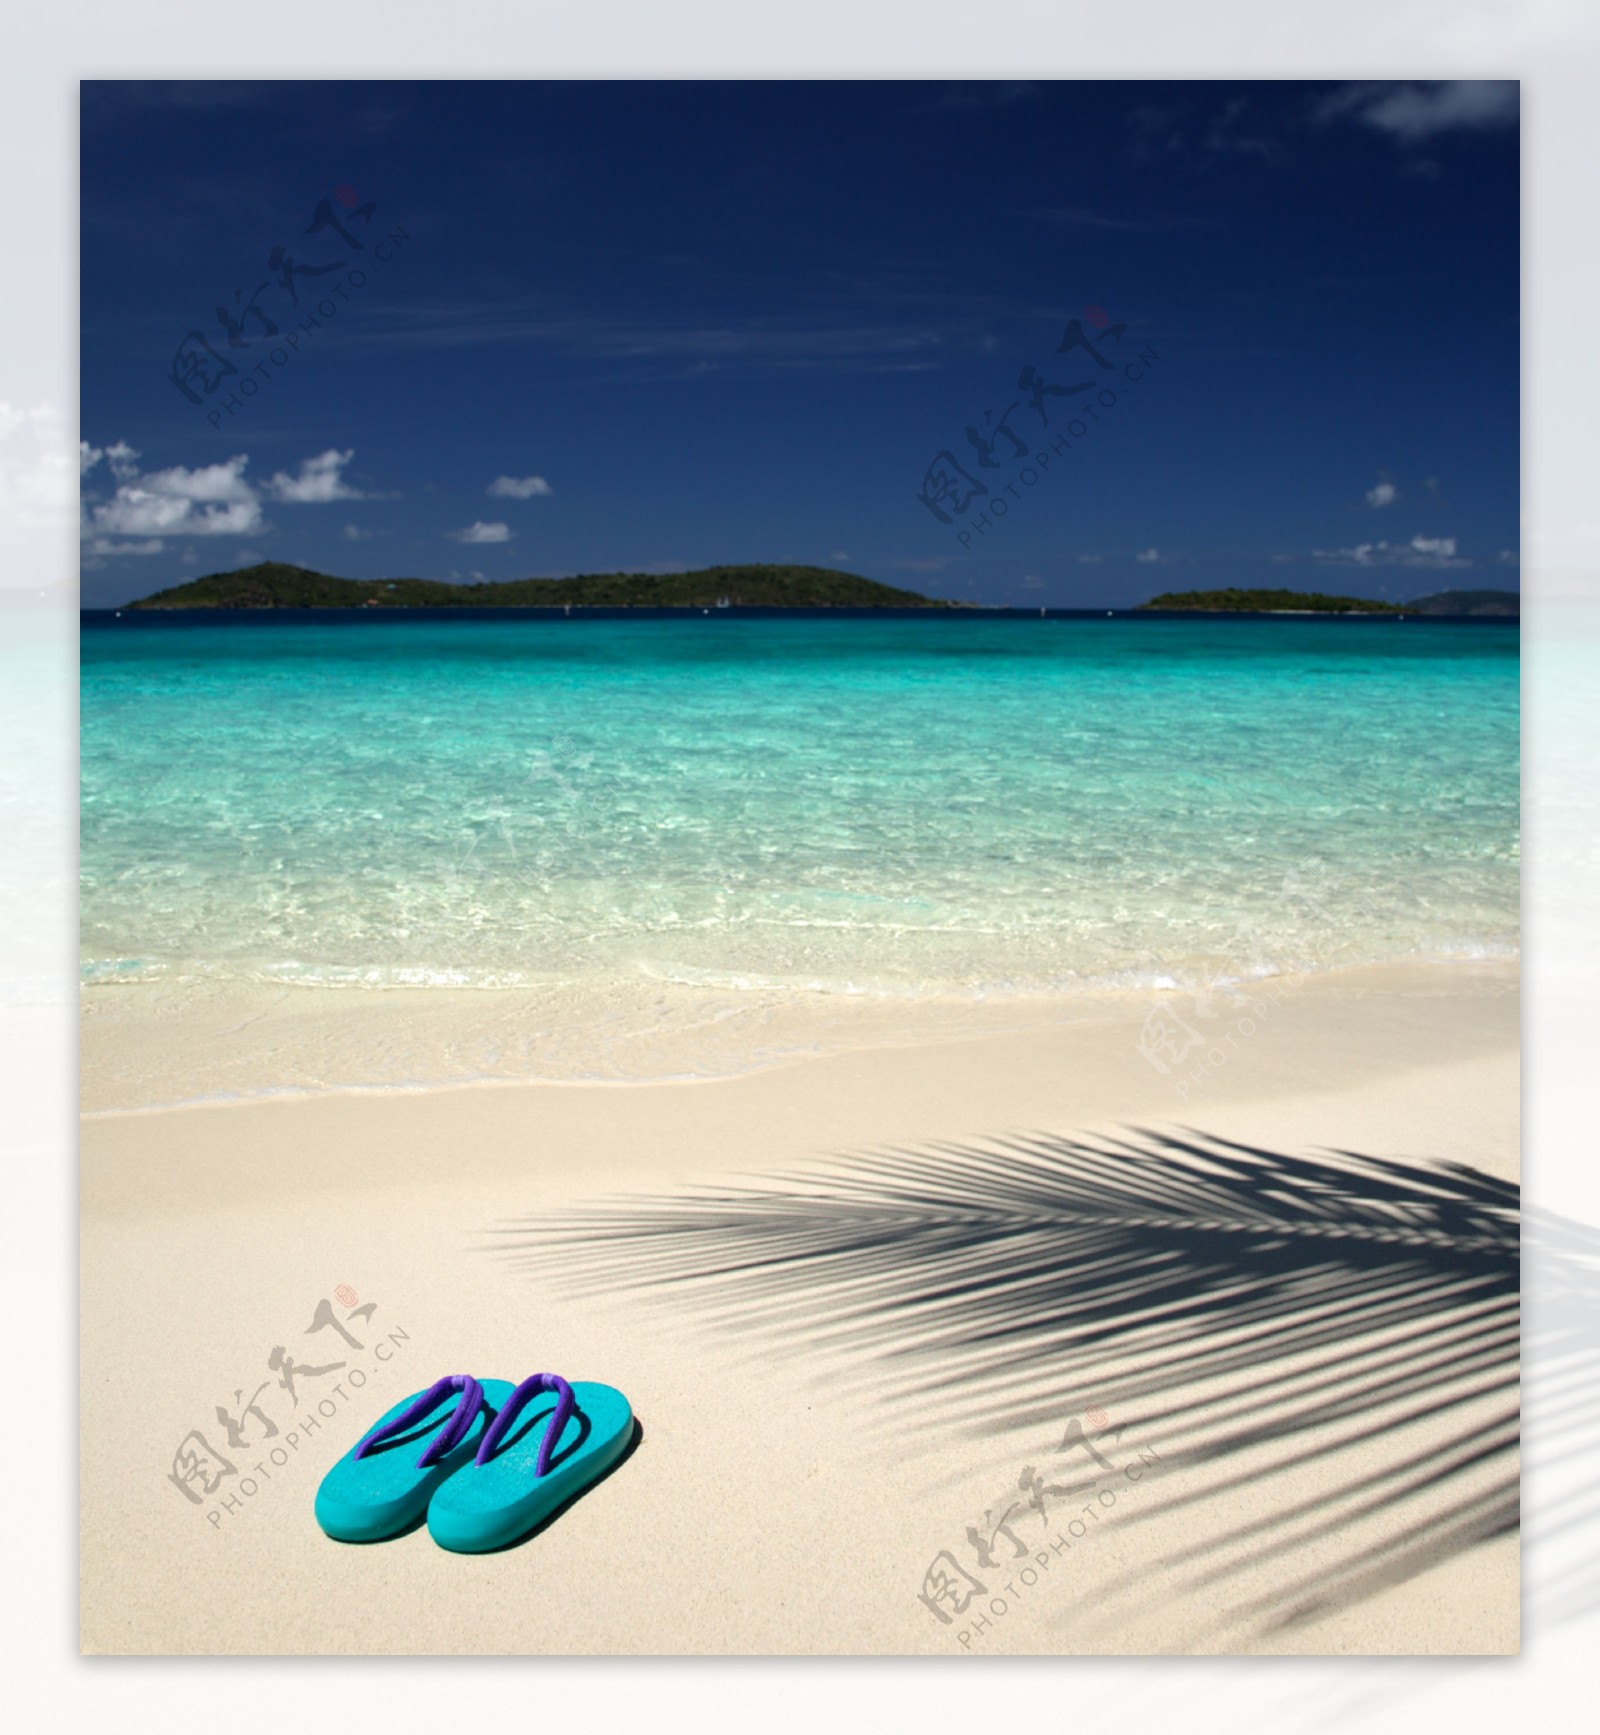 沙滩上的拖鞋风景图片